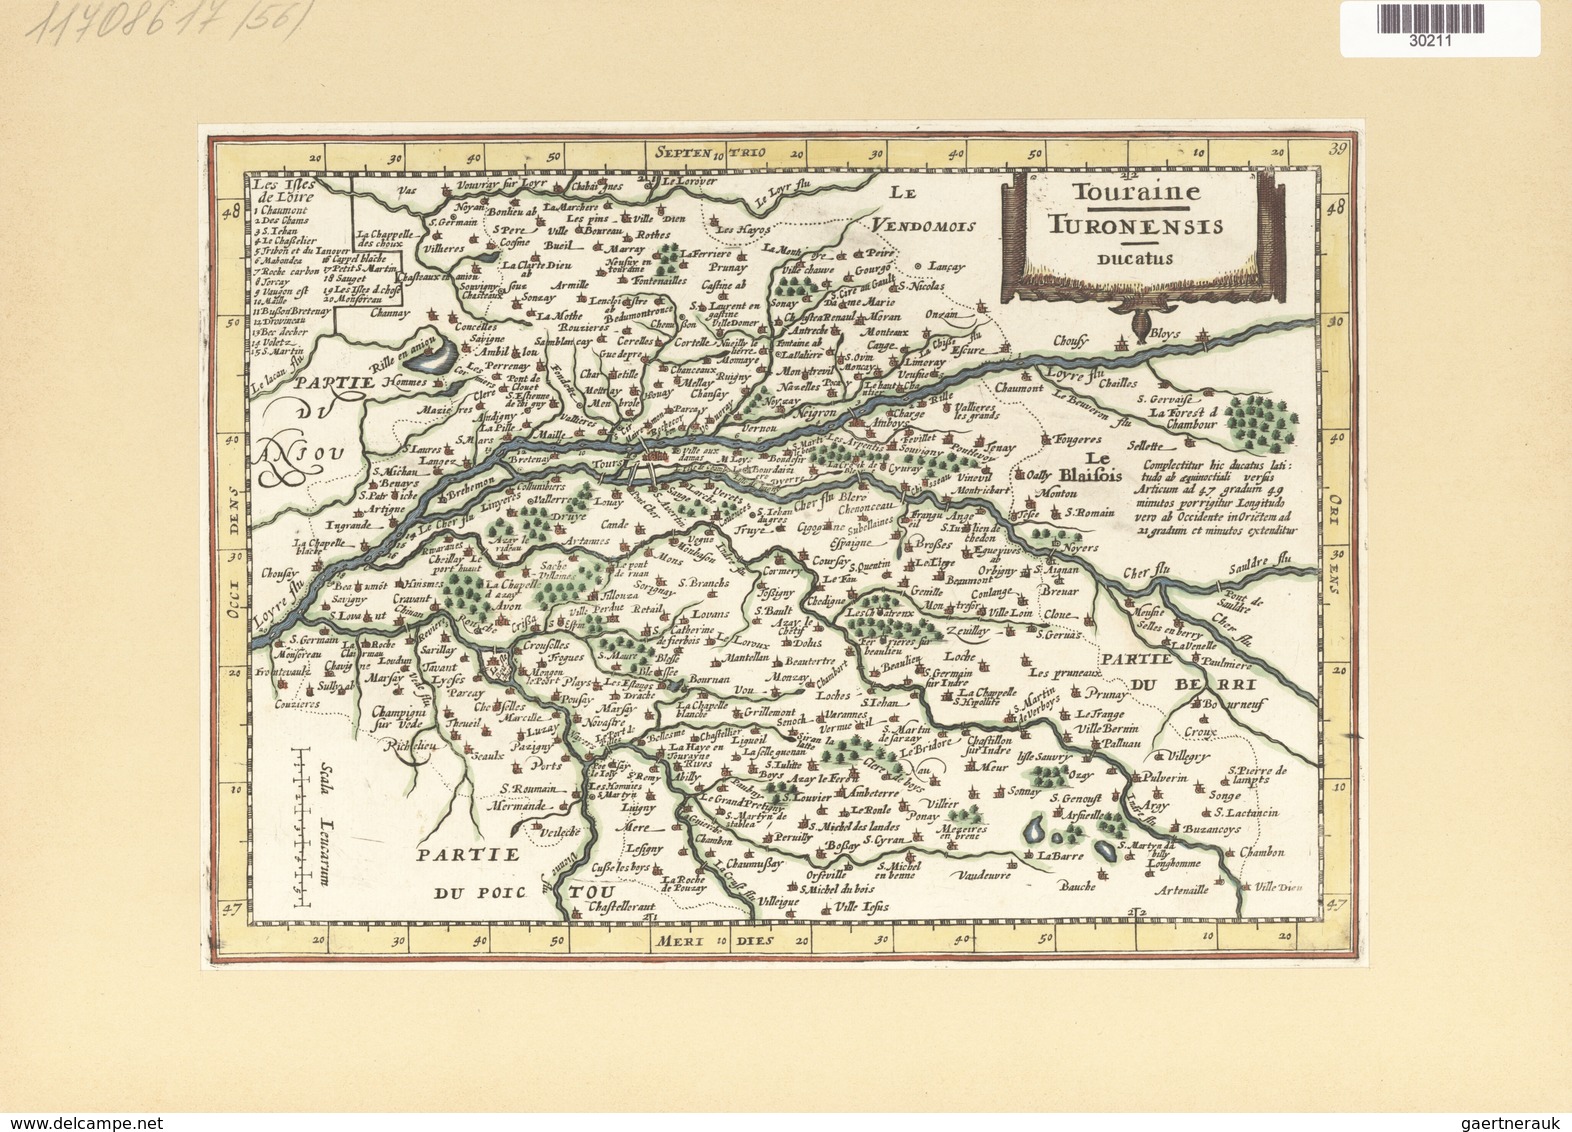 Landkarten Und Stiche: 1734. Touraine / Turonensis Ducatus. Map Of The Duchy Of Tours Region Of Fran - Geography